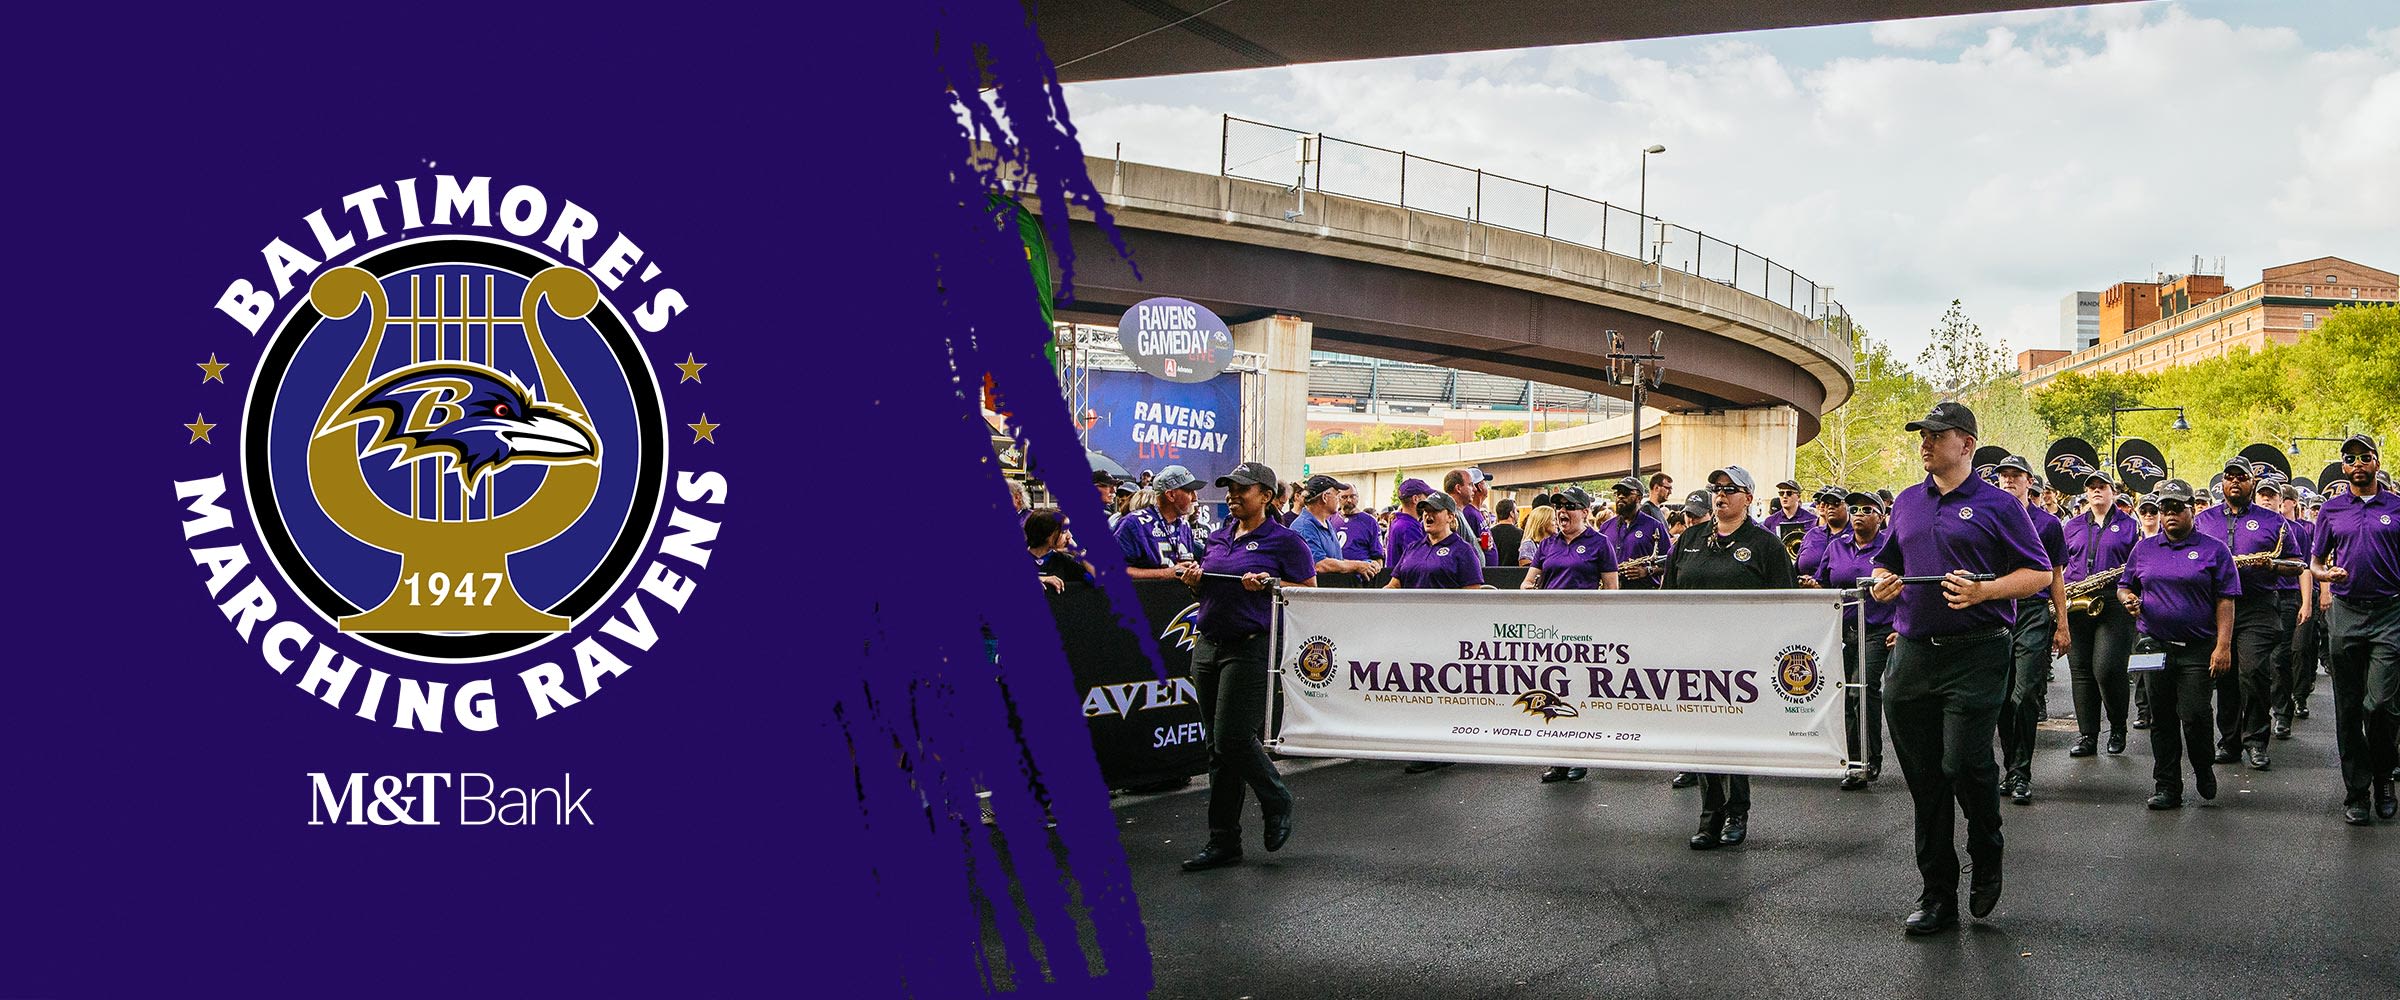 Baltimore Marching Ravens Presenteras av MT Bank Right: Baltimore Marching Ravens parade ner Ravenswalk före ett spel